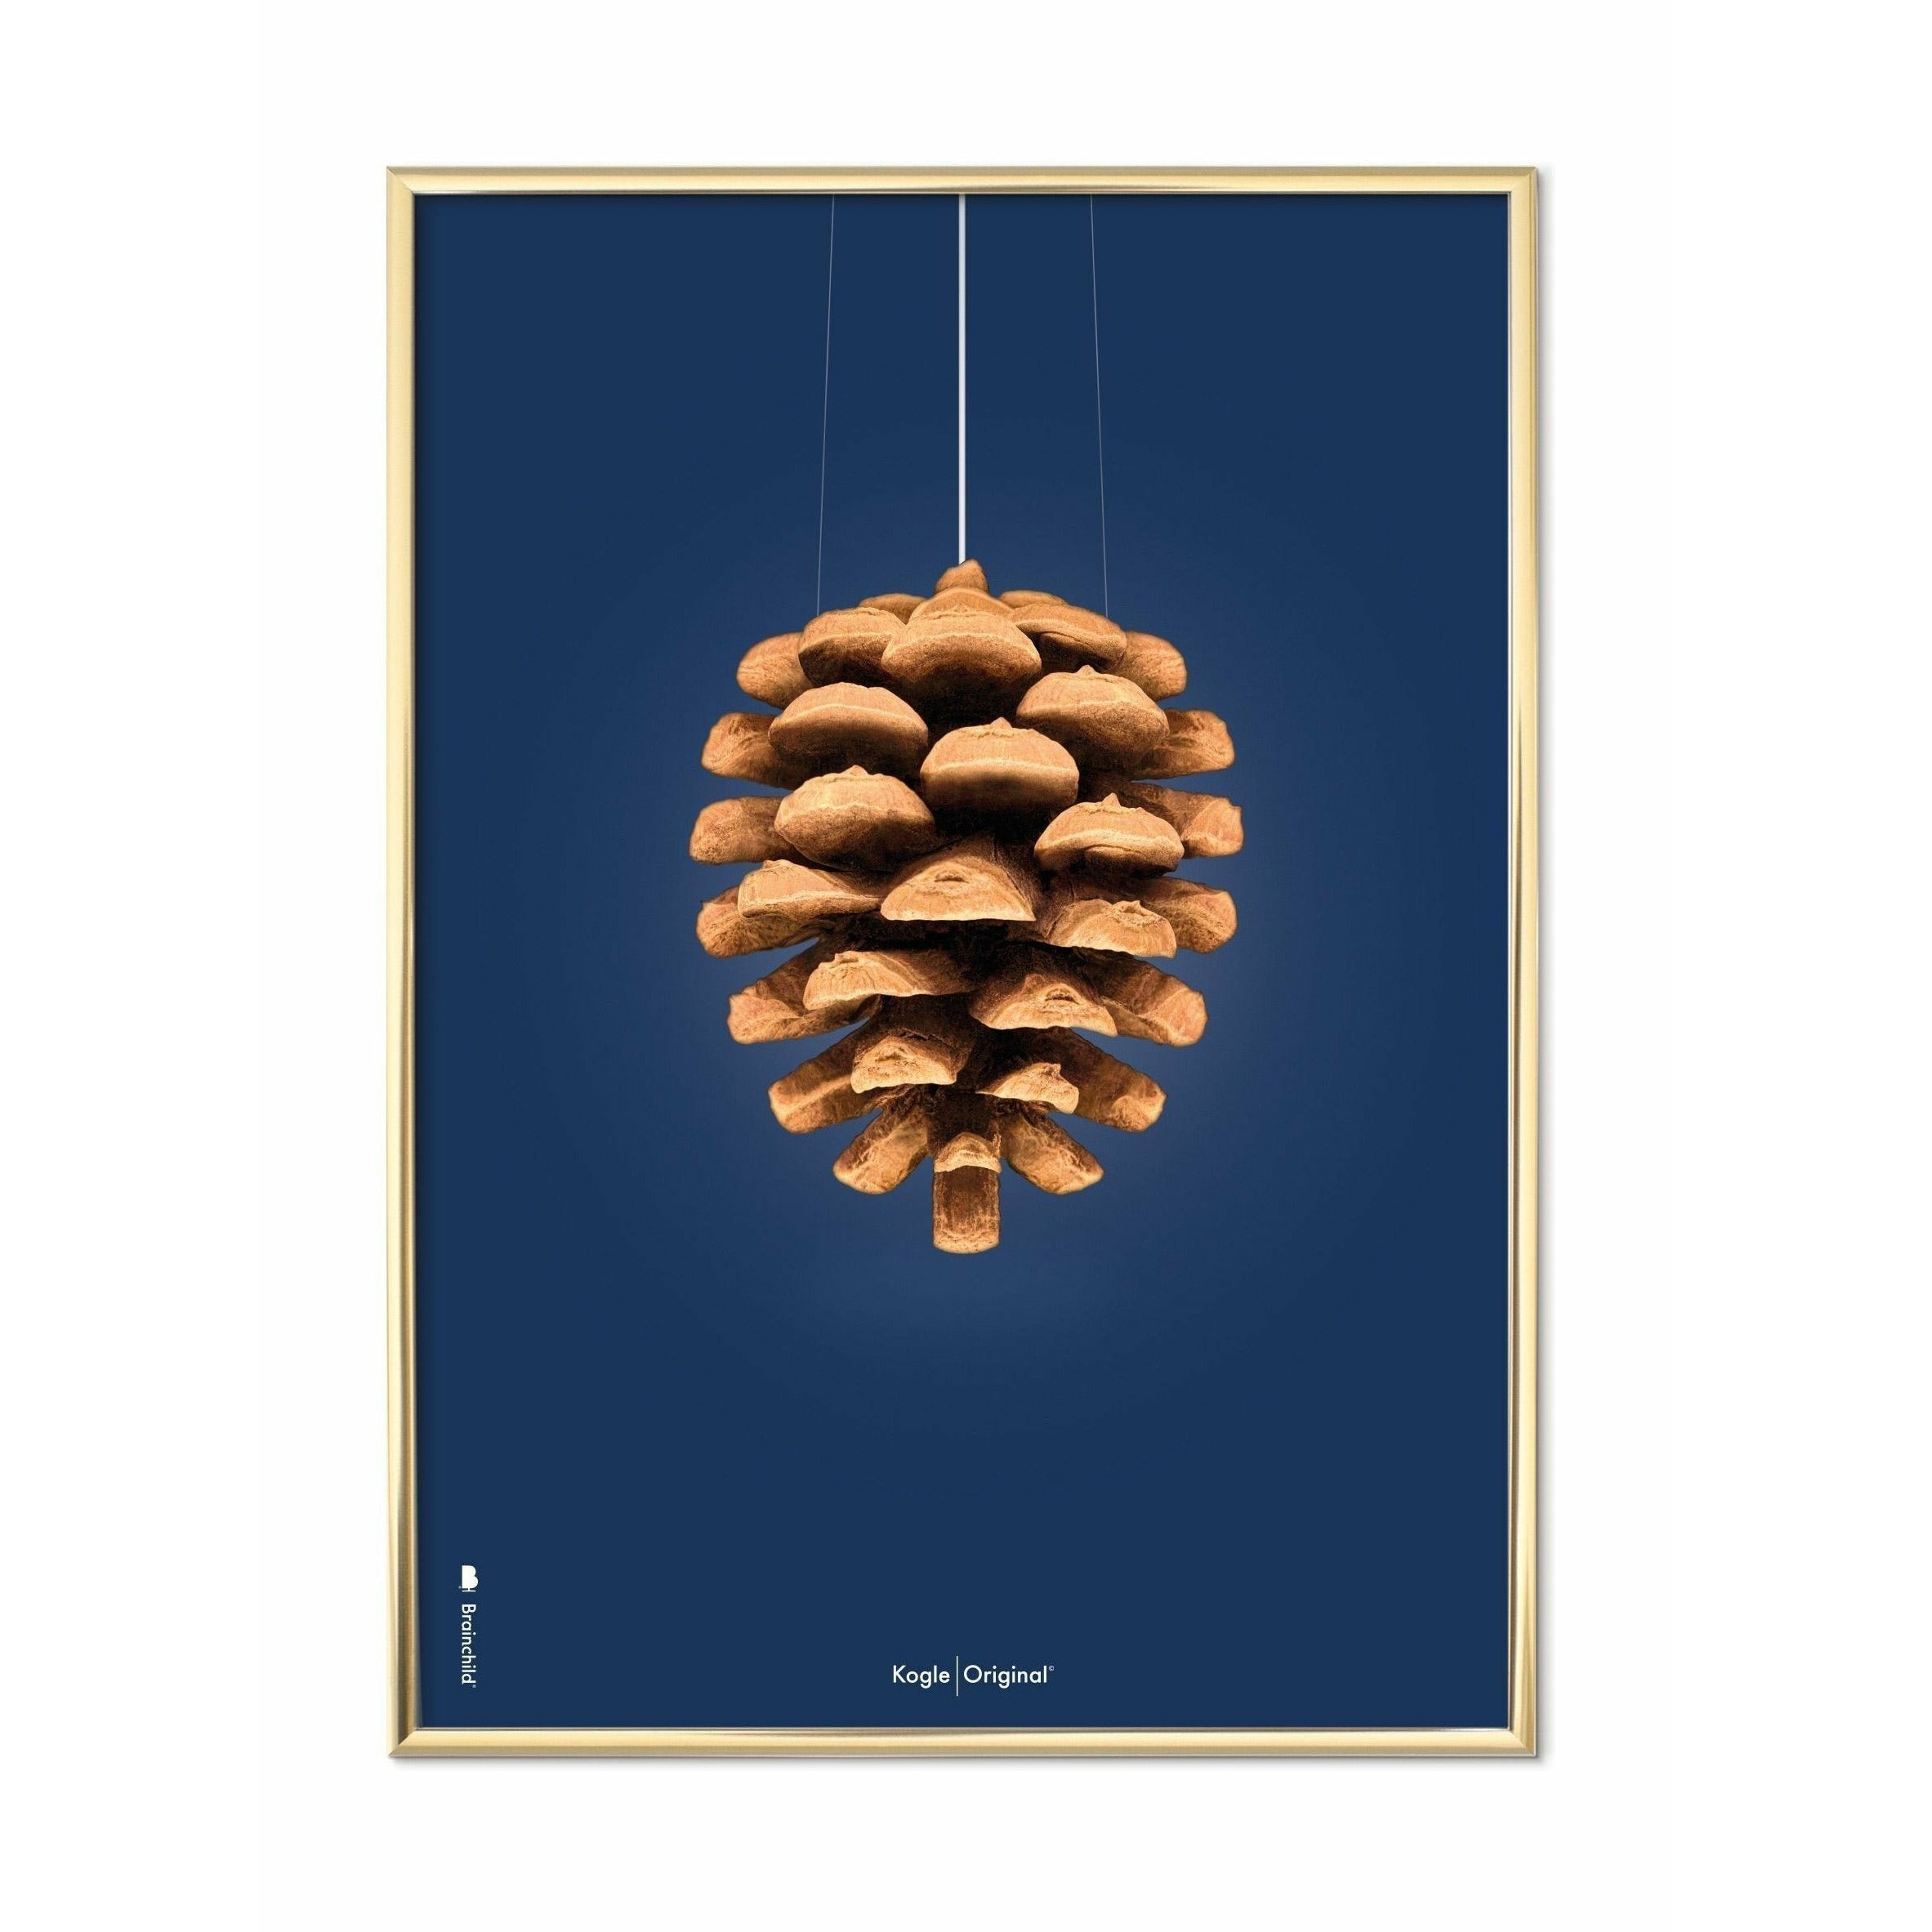 Póster clásico de Pine Cone de Brainchild, marco de latón 30x40 cm, fondo azul oscuro